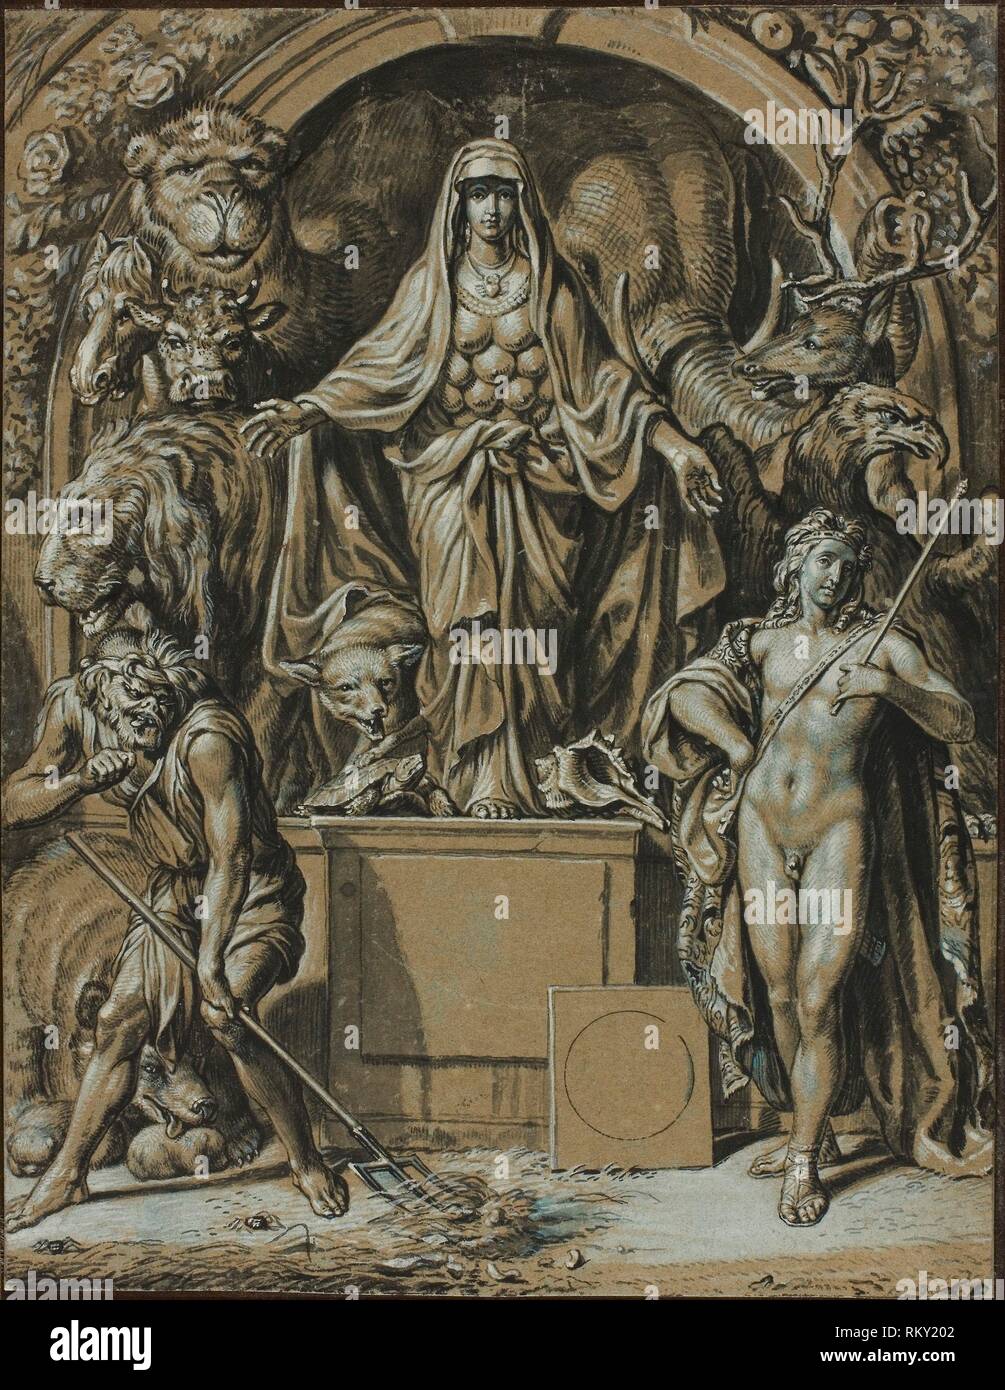 Diana von Ephesus als Allegorie der Natur - C. 1680 - Joseph Werner Schweizer, 1637-1710 - Artist: Joseph Werner, Herkunft: Schweiz, Datum: 1674 - 1685 Stockfoto